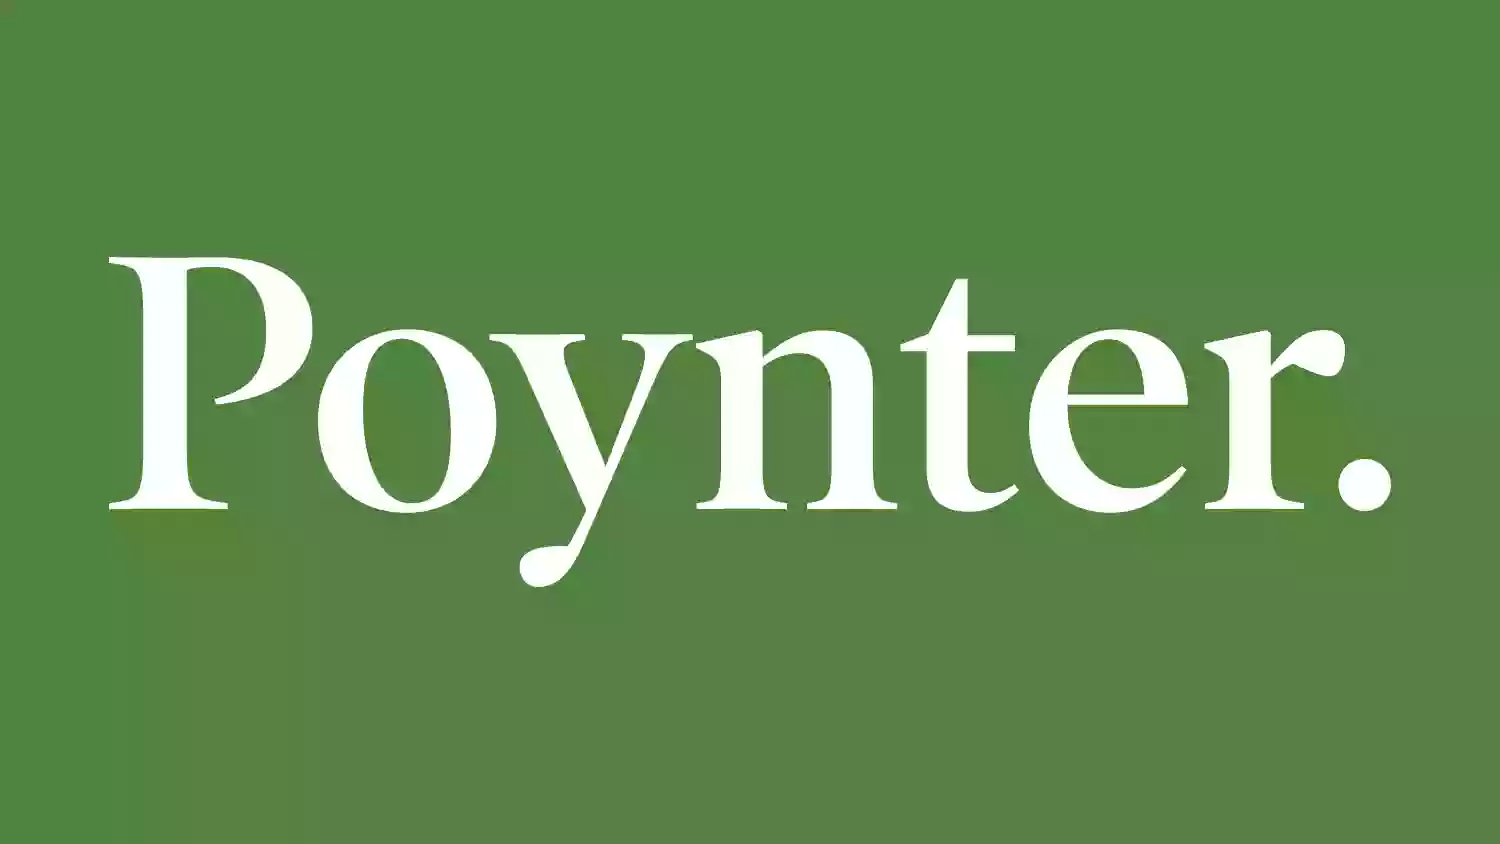 The Poynter Institute